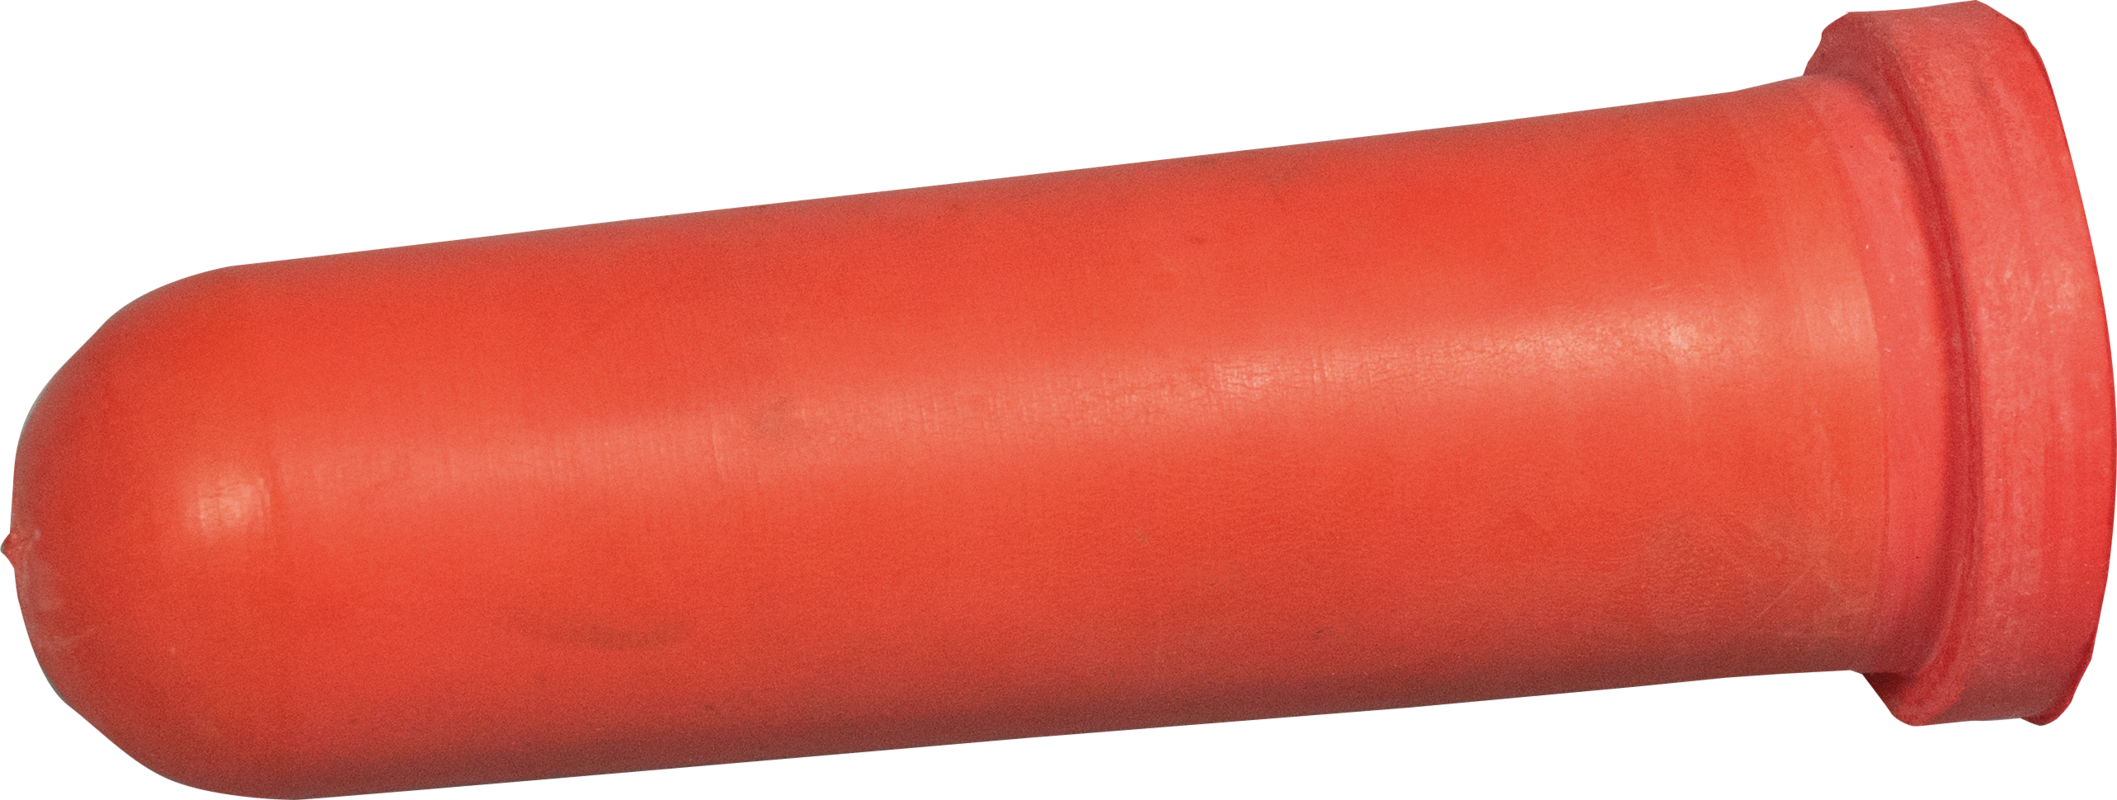 Sauger, mittel (rot) für Kugelventil für Nuckel-Tränkeeimer und Kälber-Tränkeflasche Profi